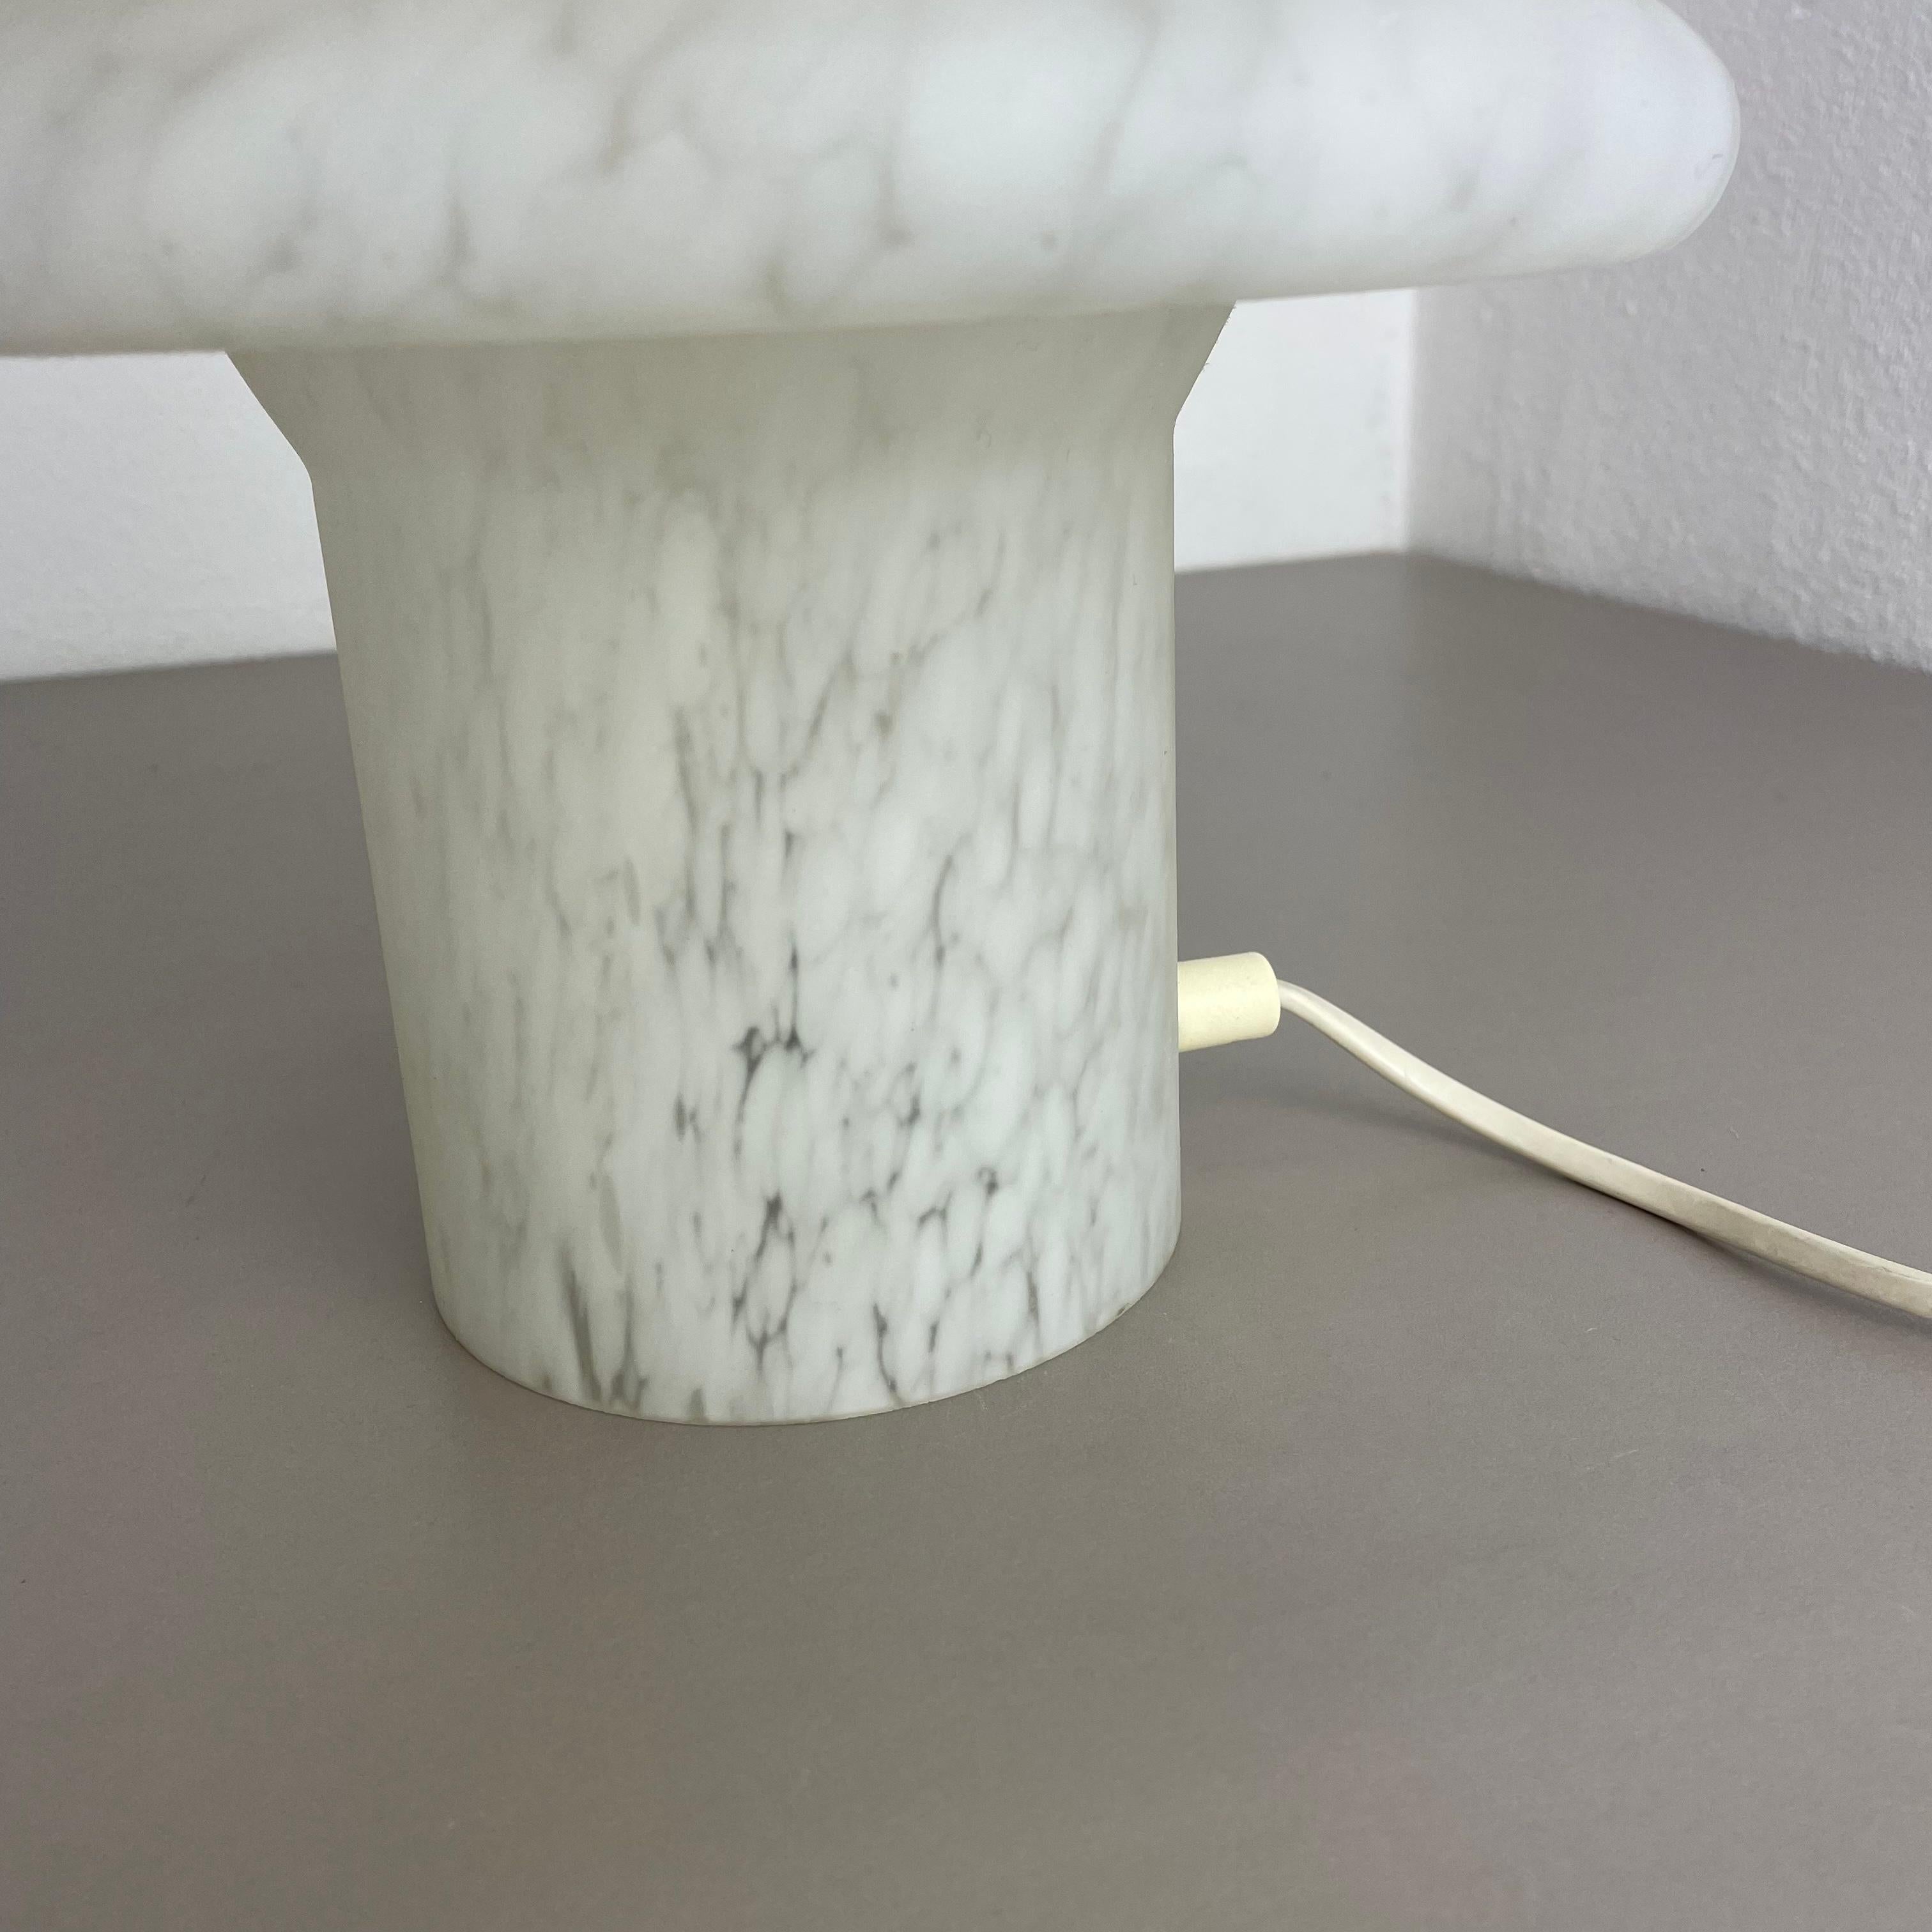 Original Glass Mushroom Desk Light by Peill & Putzler, Germany, 1970s For Sale 10